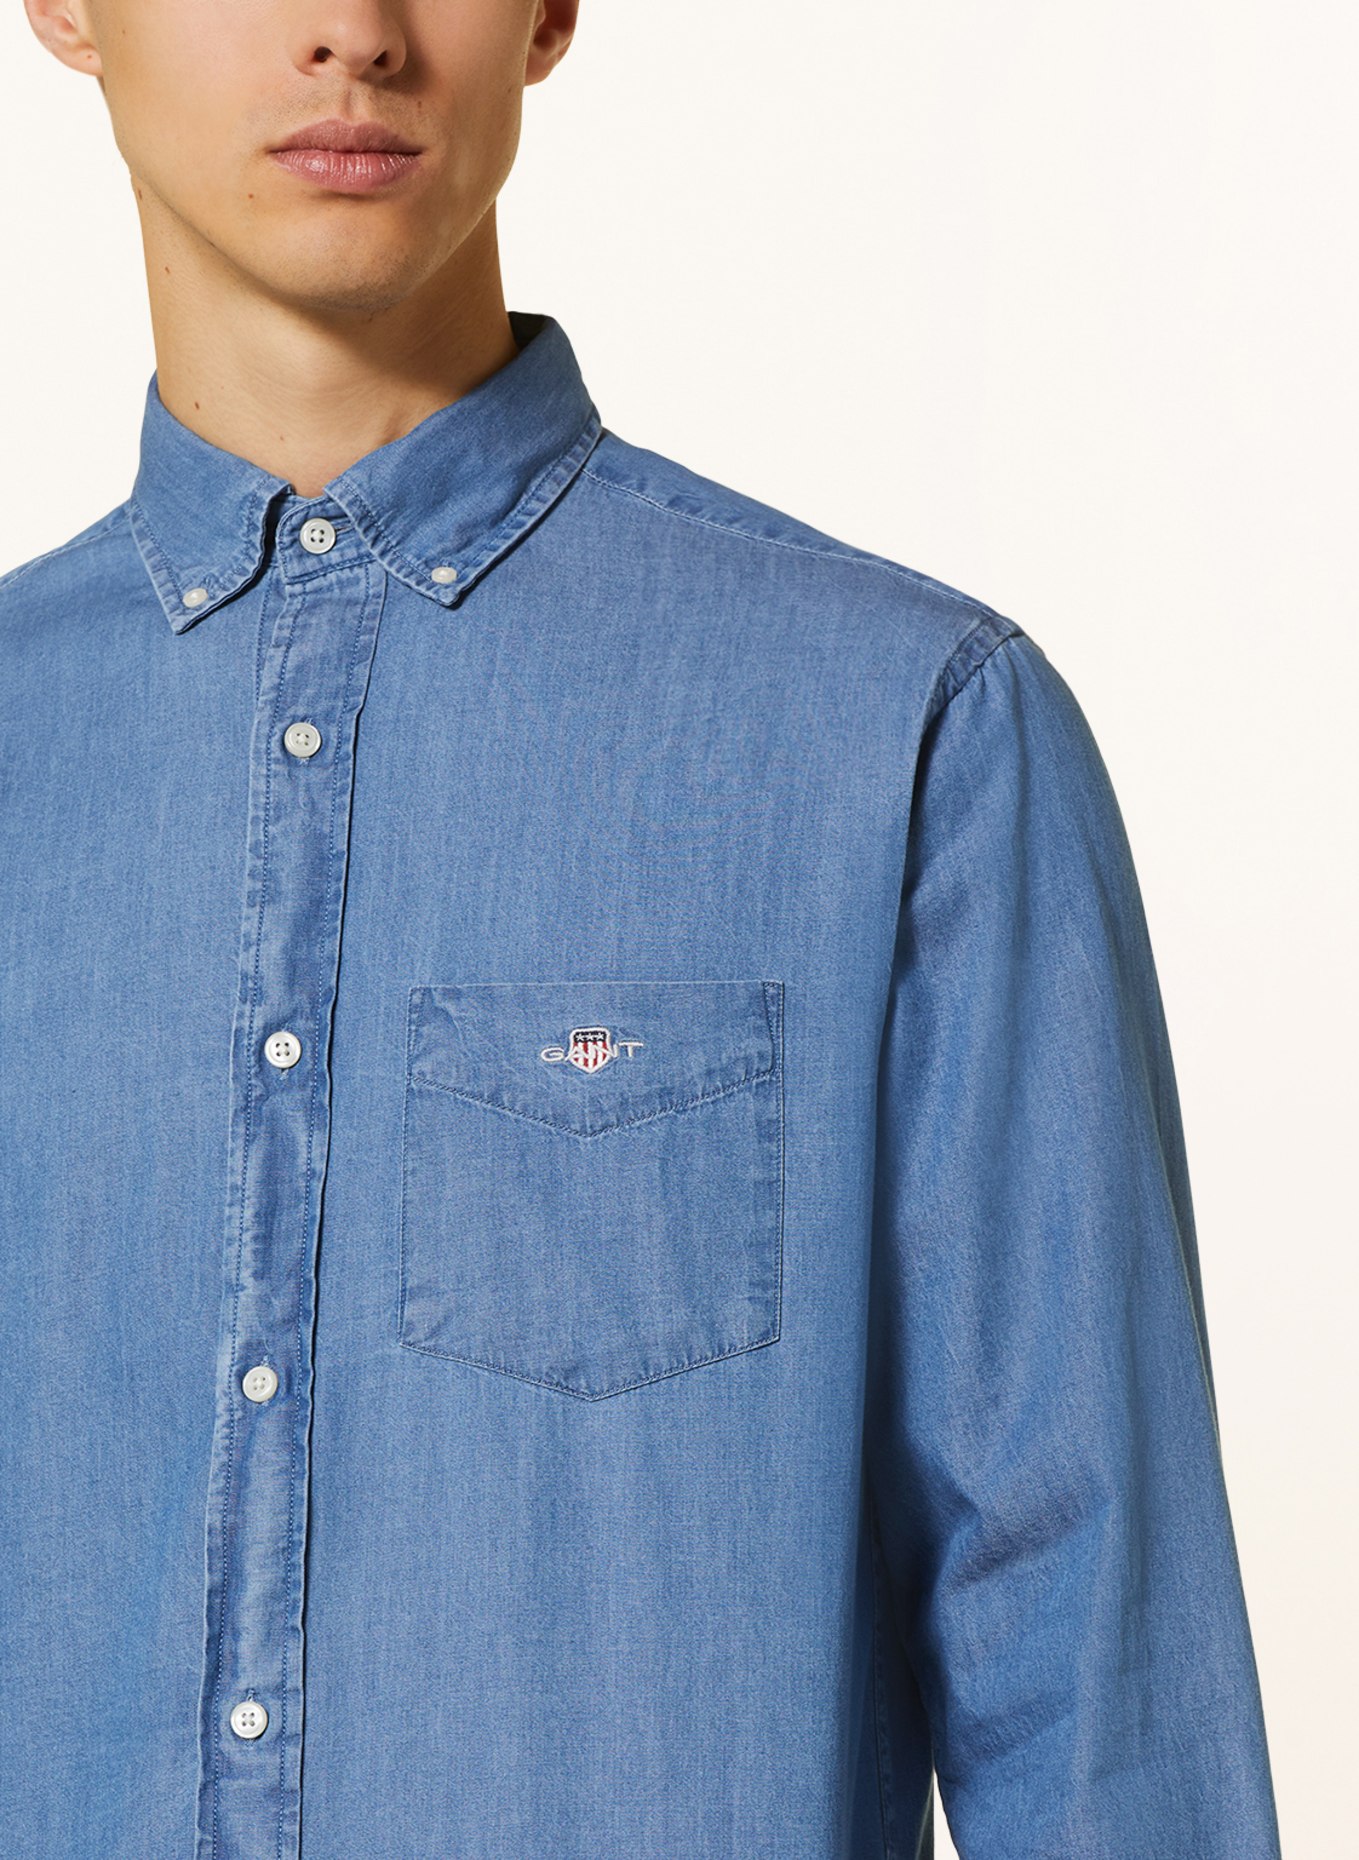 GANT Shirt regular fit in denim look, Color: BLUE (Image 4)